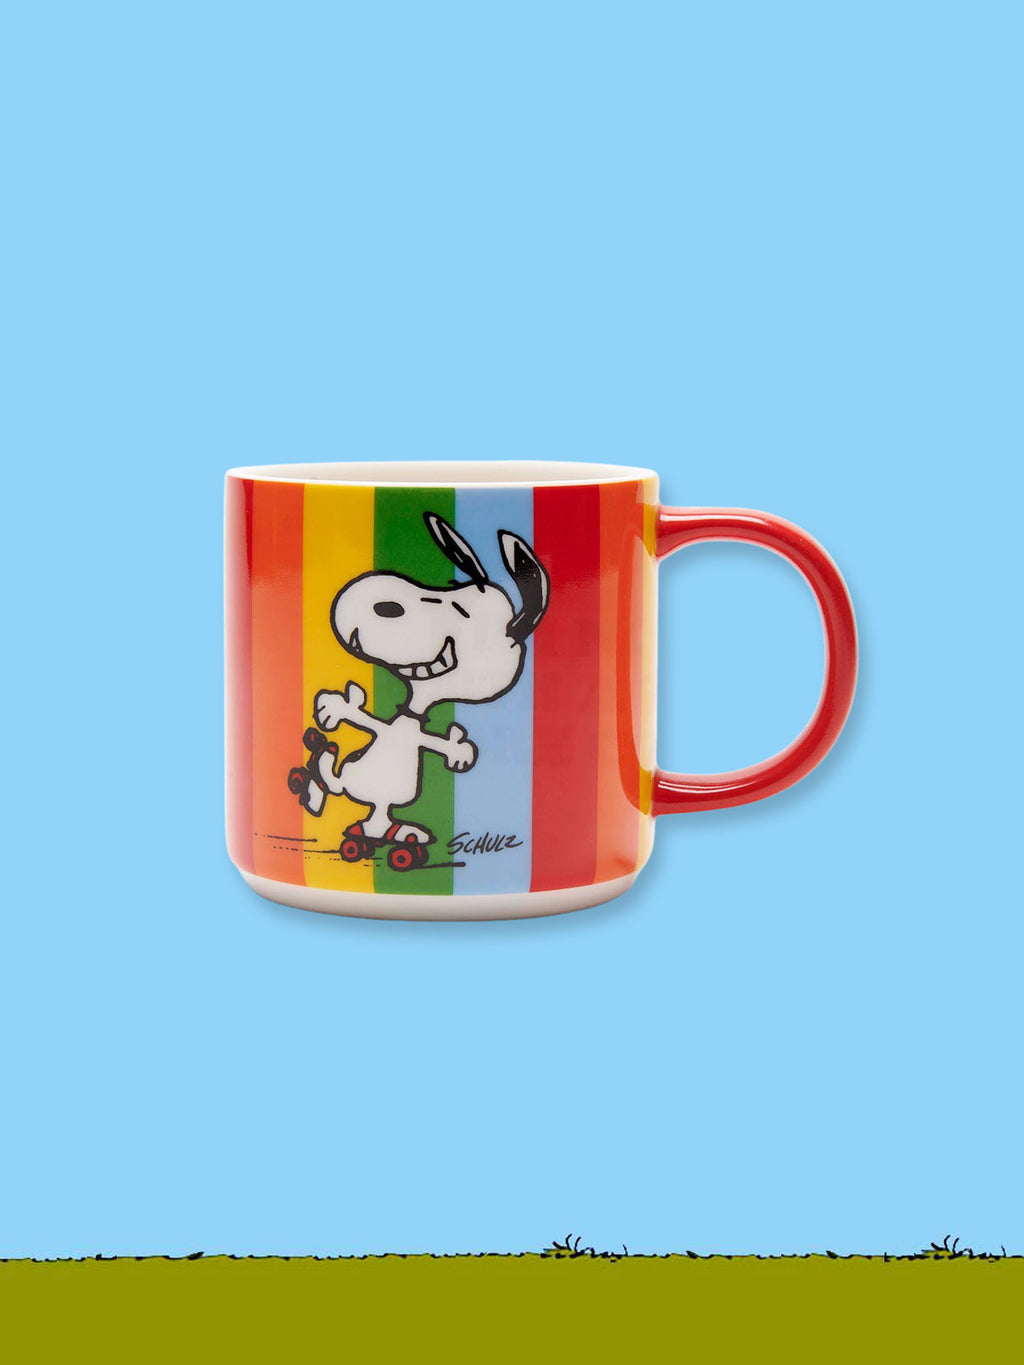 Peanuts Ceramic Mug - Good Times Mug